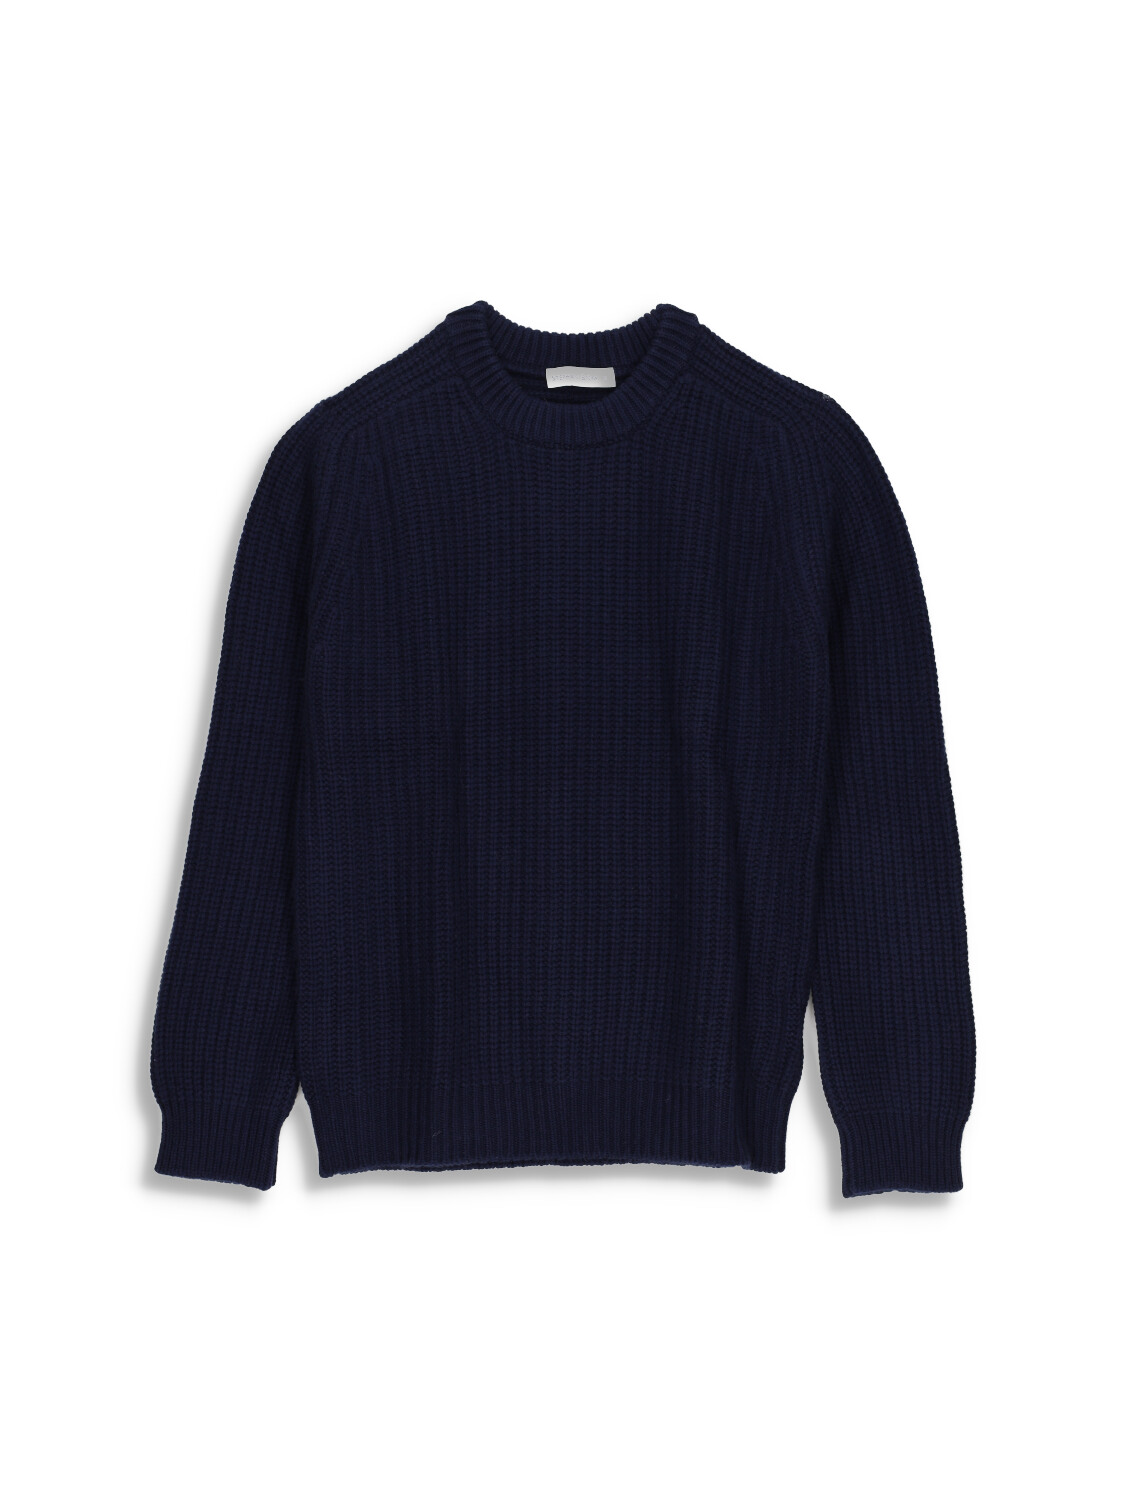 Mood Rib Sweater - Rib knit sweater